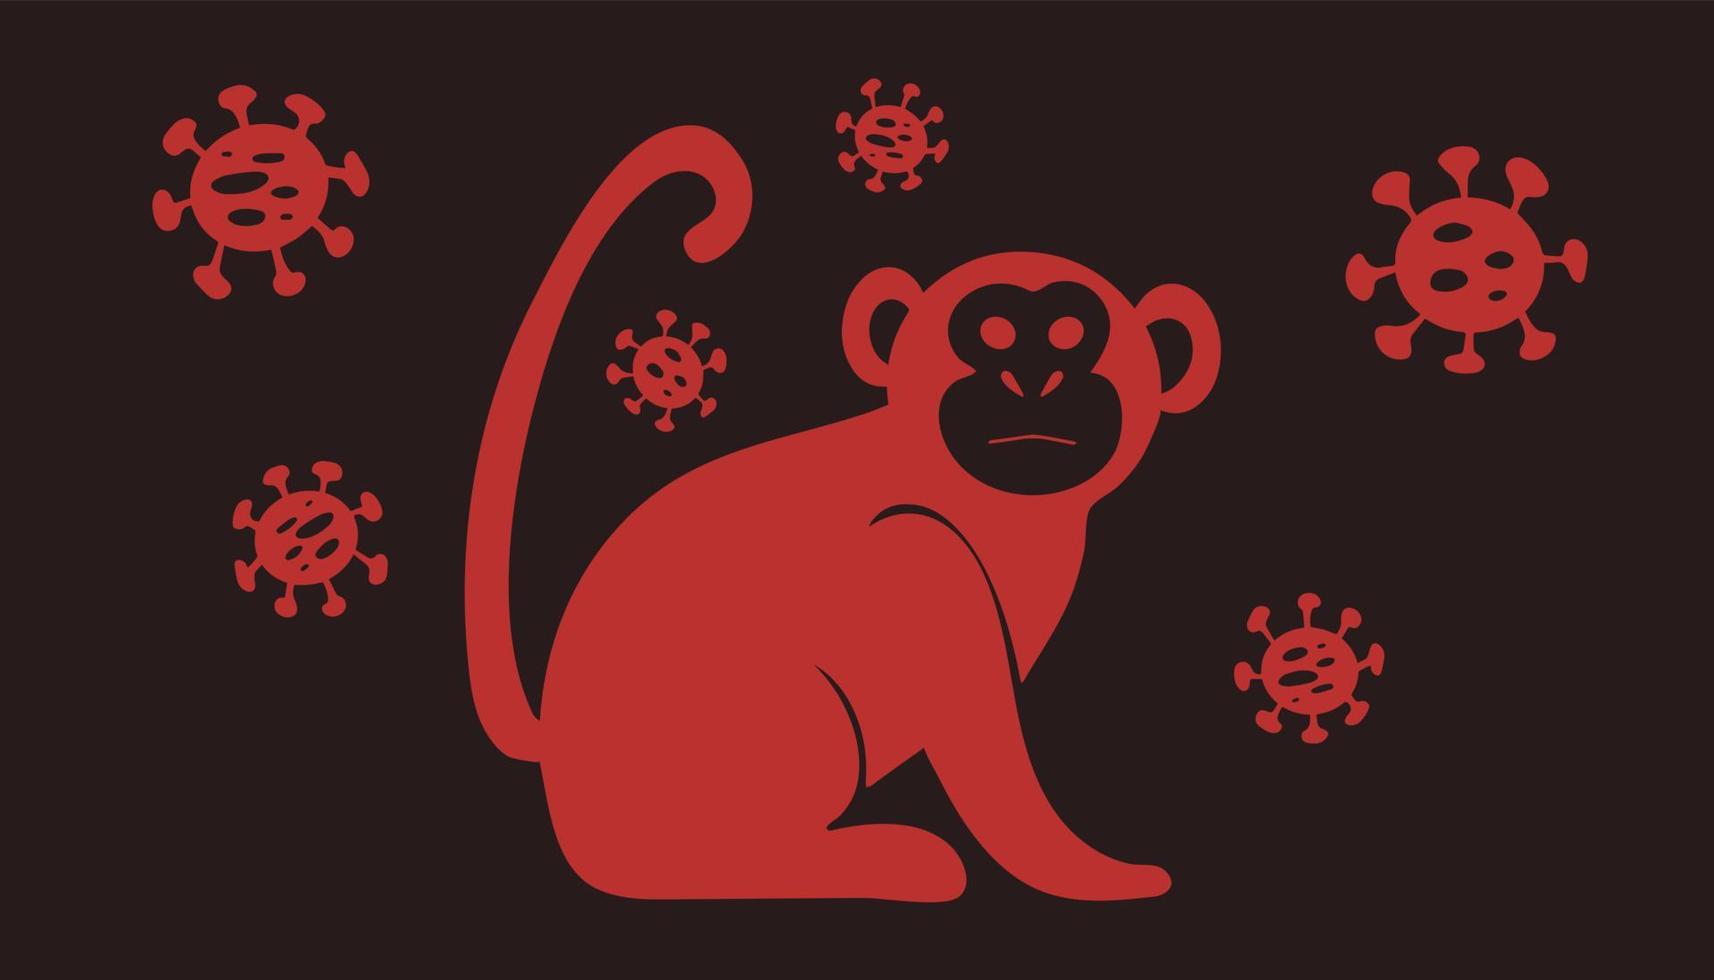 vektorillustration des affensymbols mit viruszellen. Neues Affenpocken-2022-Virus - Krankheit, die von Affen übertragen wird, Affen im einfachen flachen Stil isoliert auf weißem Hintergrund vektor